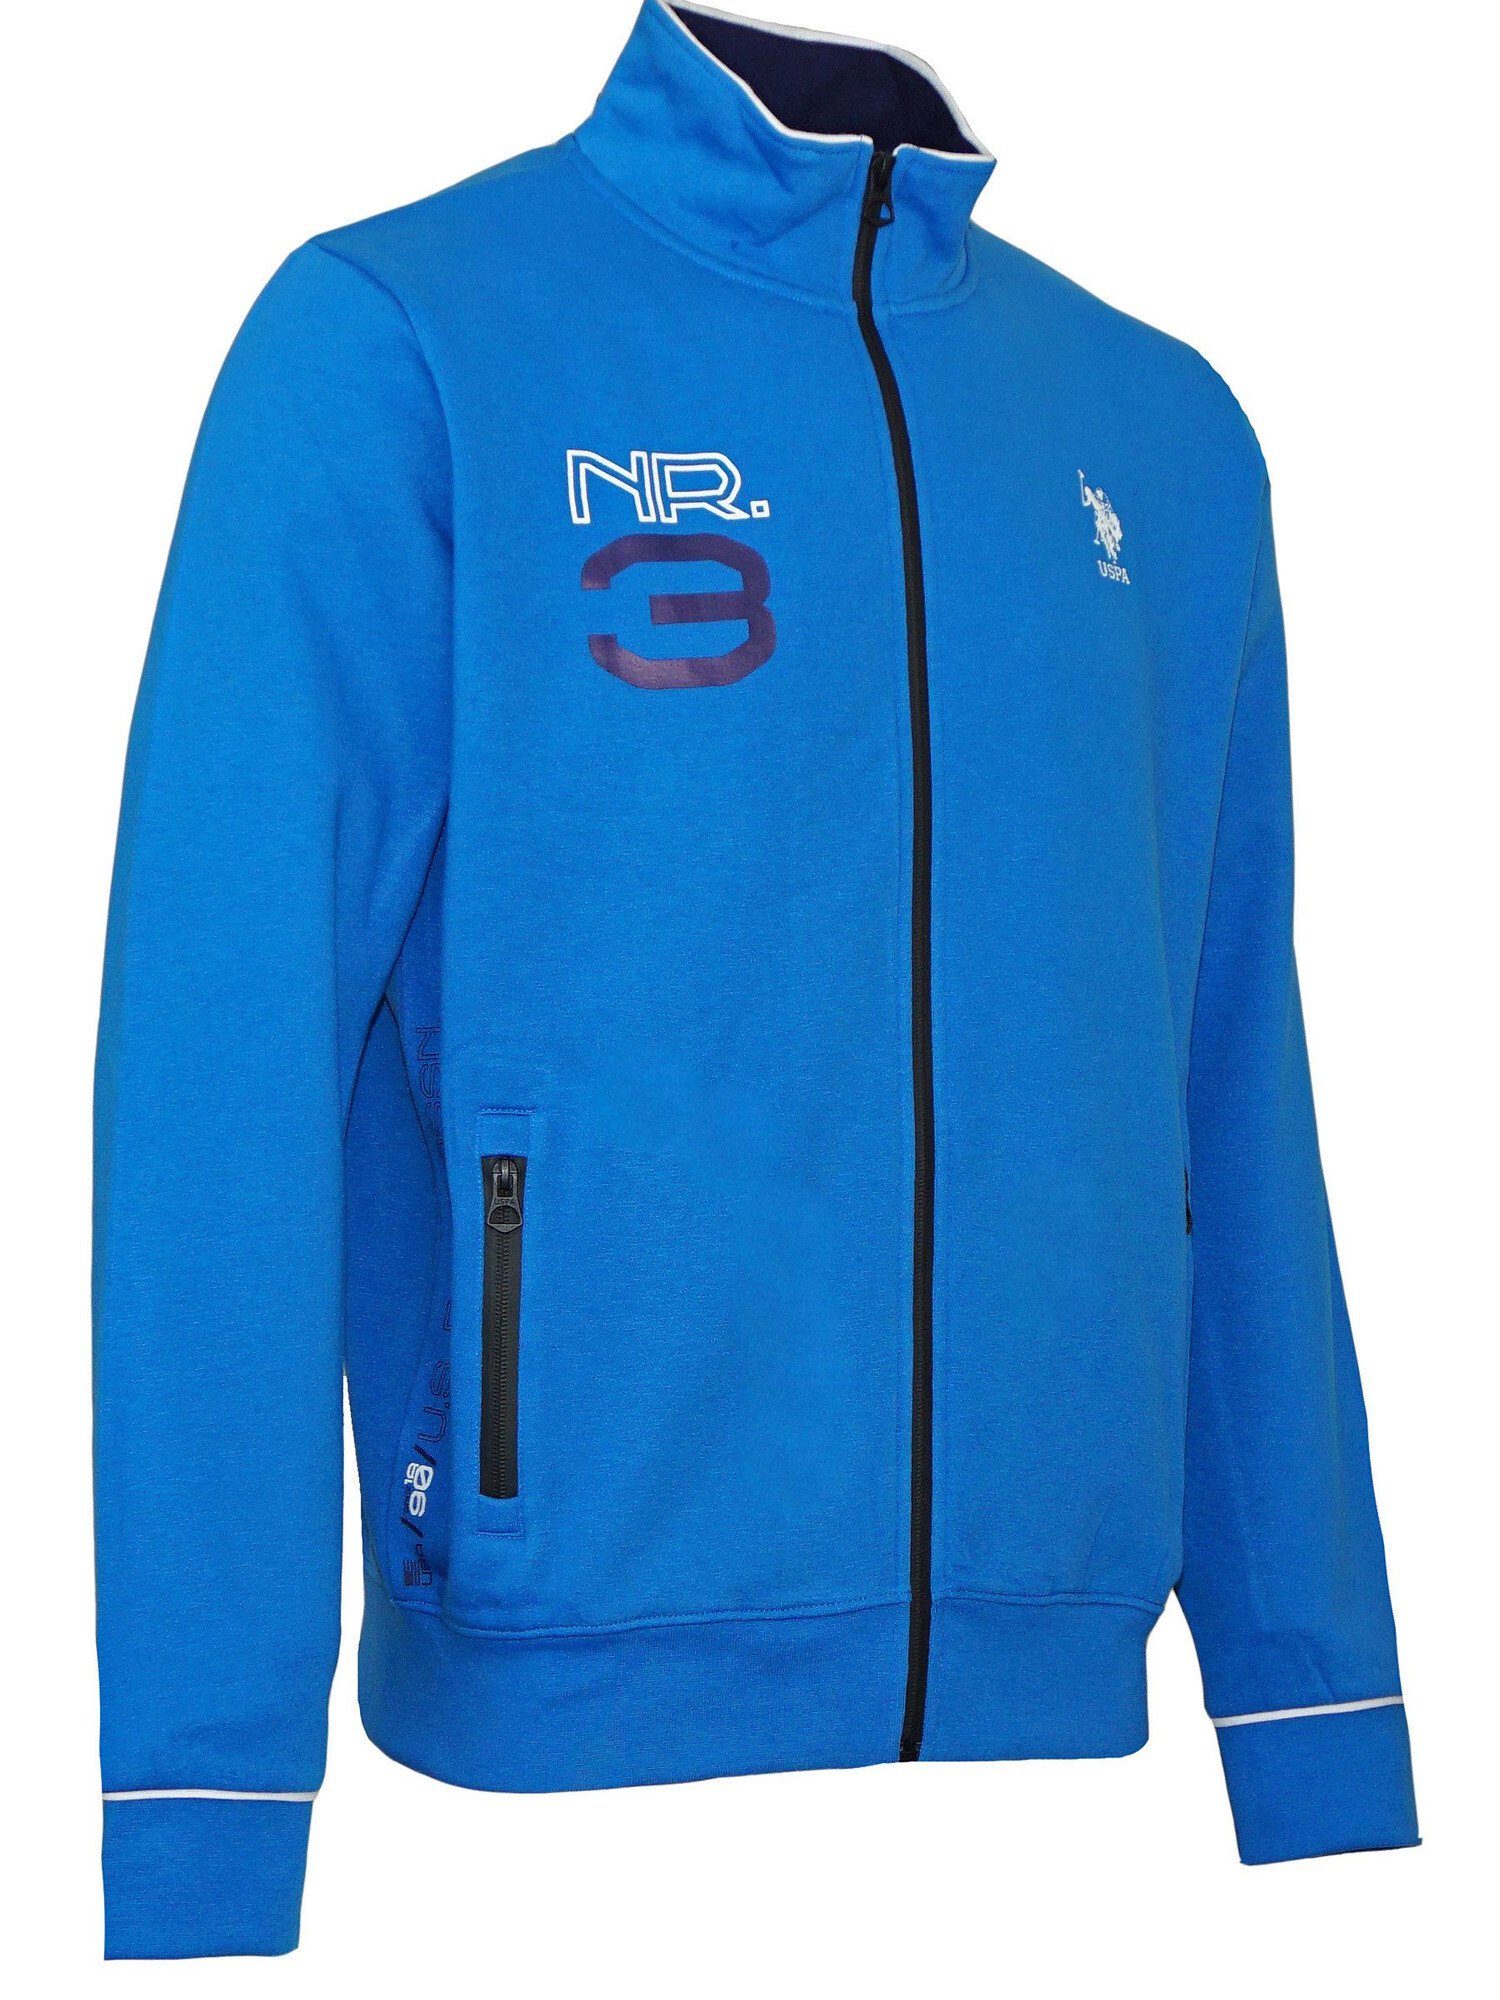 blau Zip Pro No.3 Full Jacke U.S. Assn Polo Sweatjacke Sweatjacket